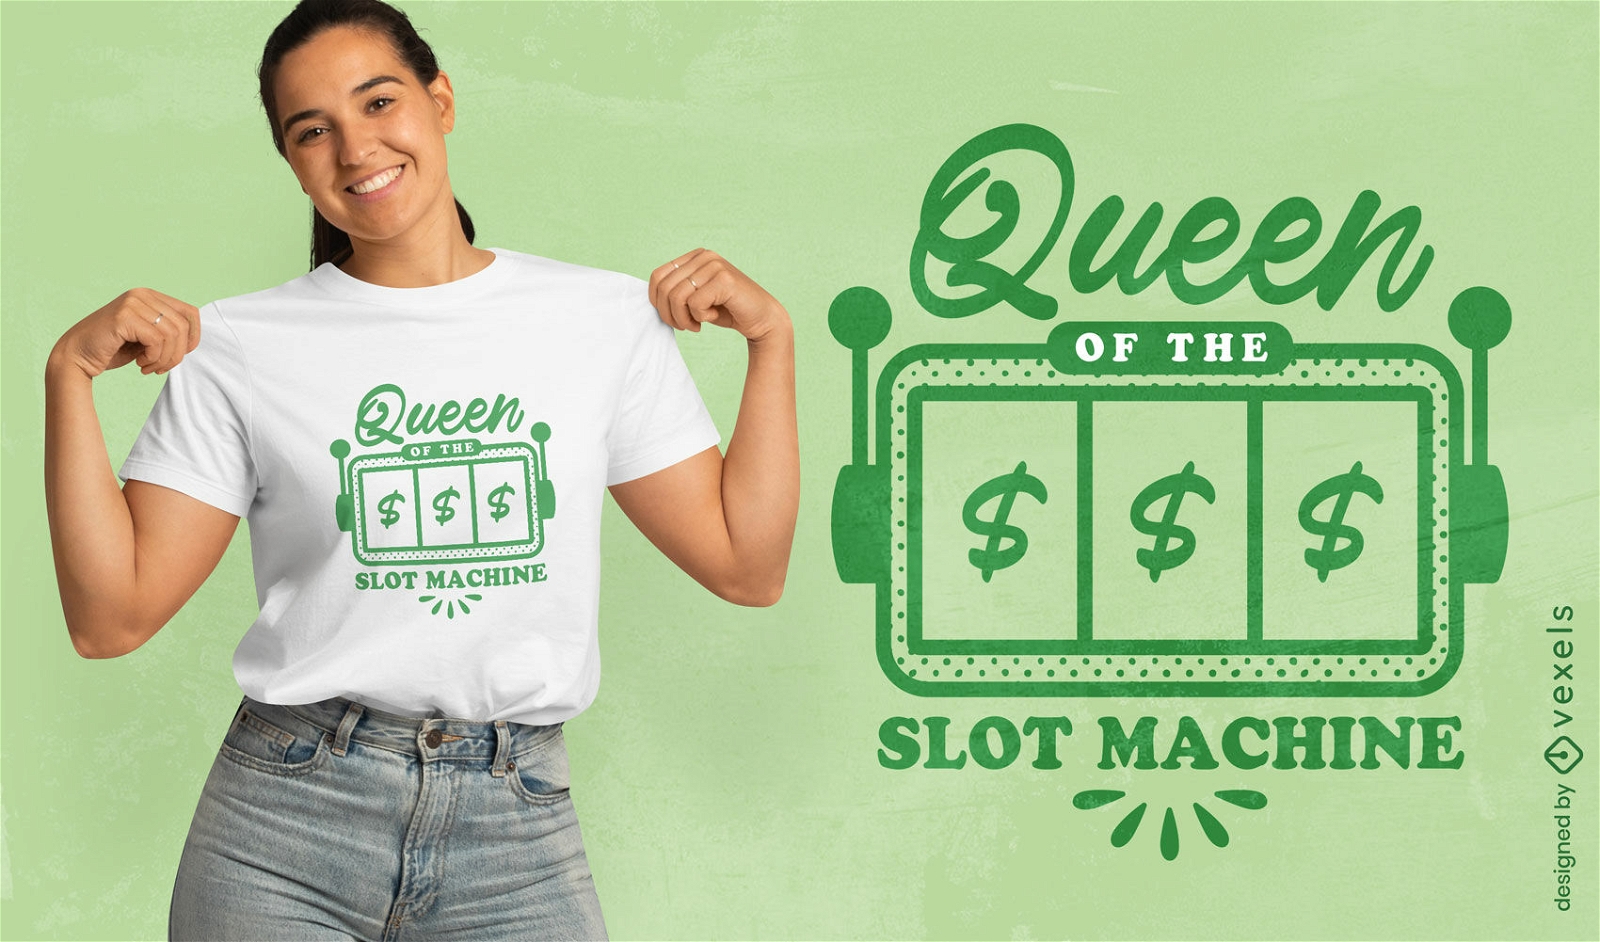 Slot machine lucky queen t-shirt design